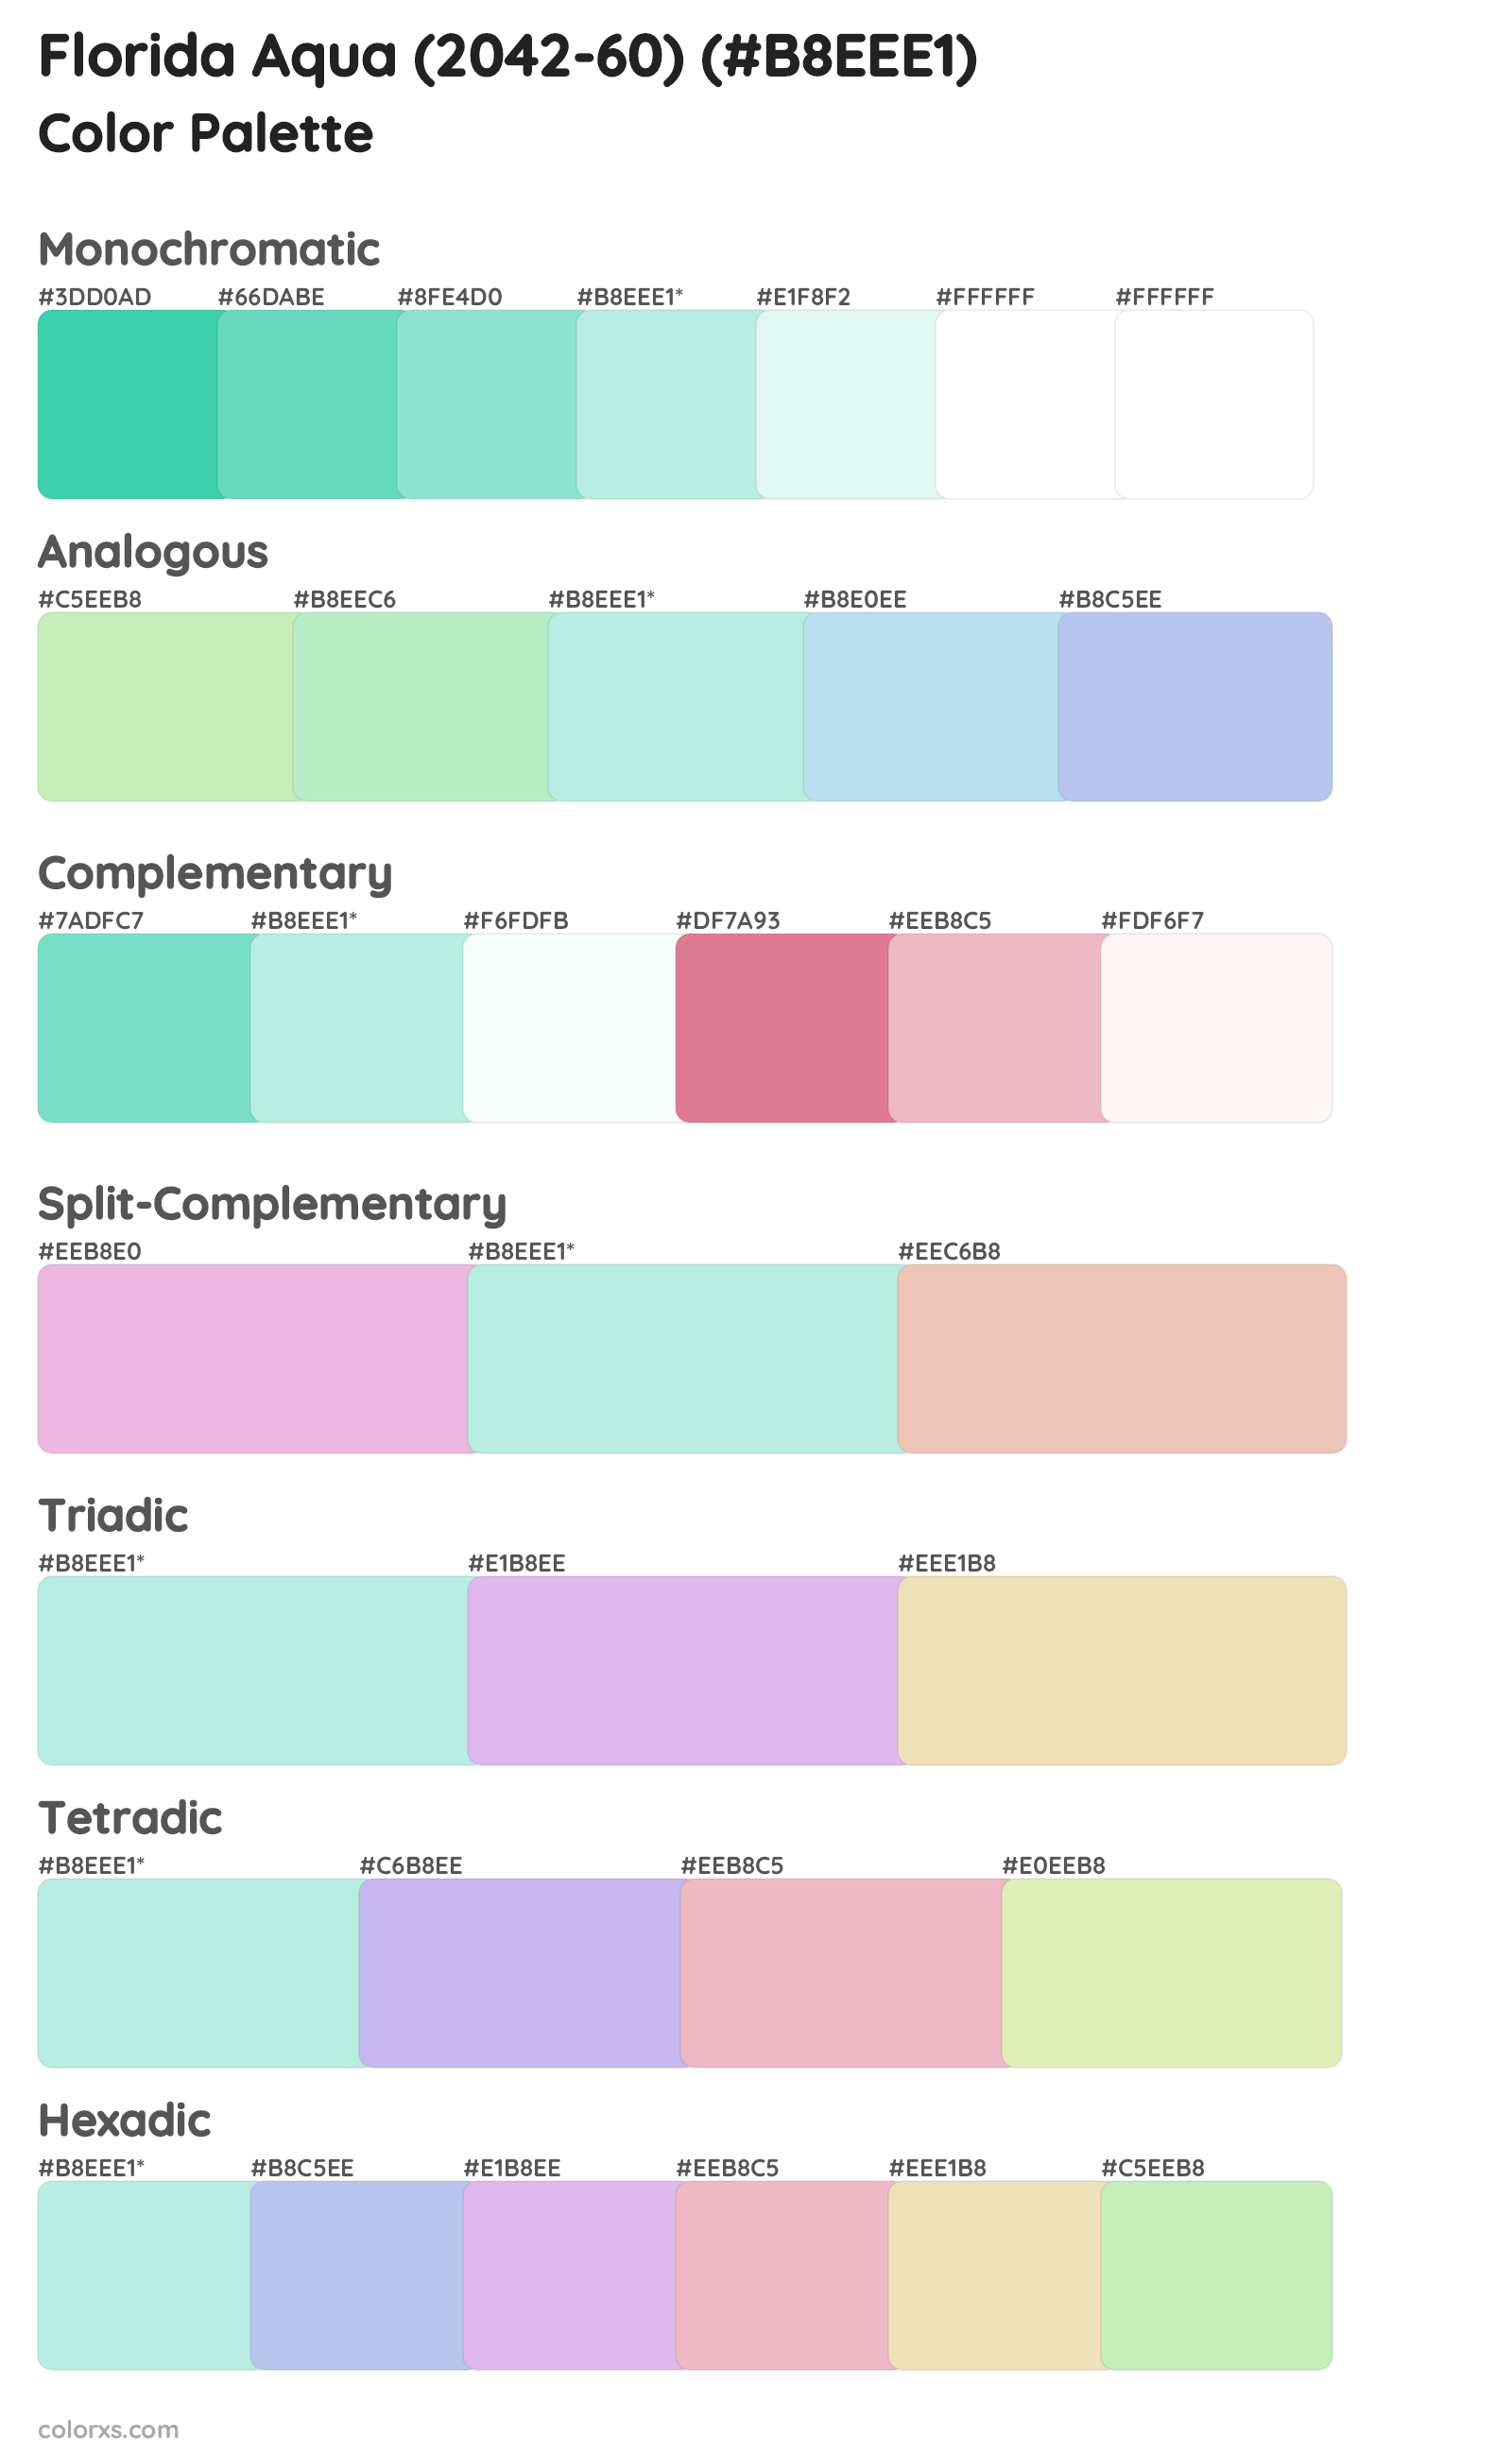 Florida Aqua (2042-60) Color Scheme Palettes